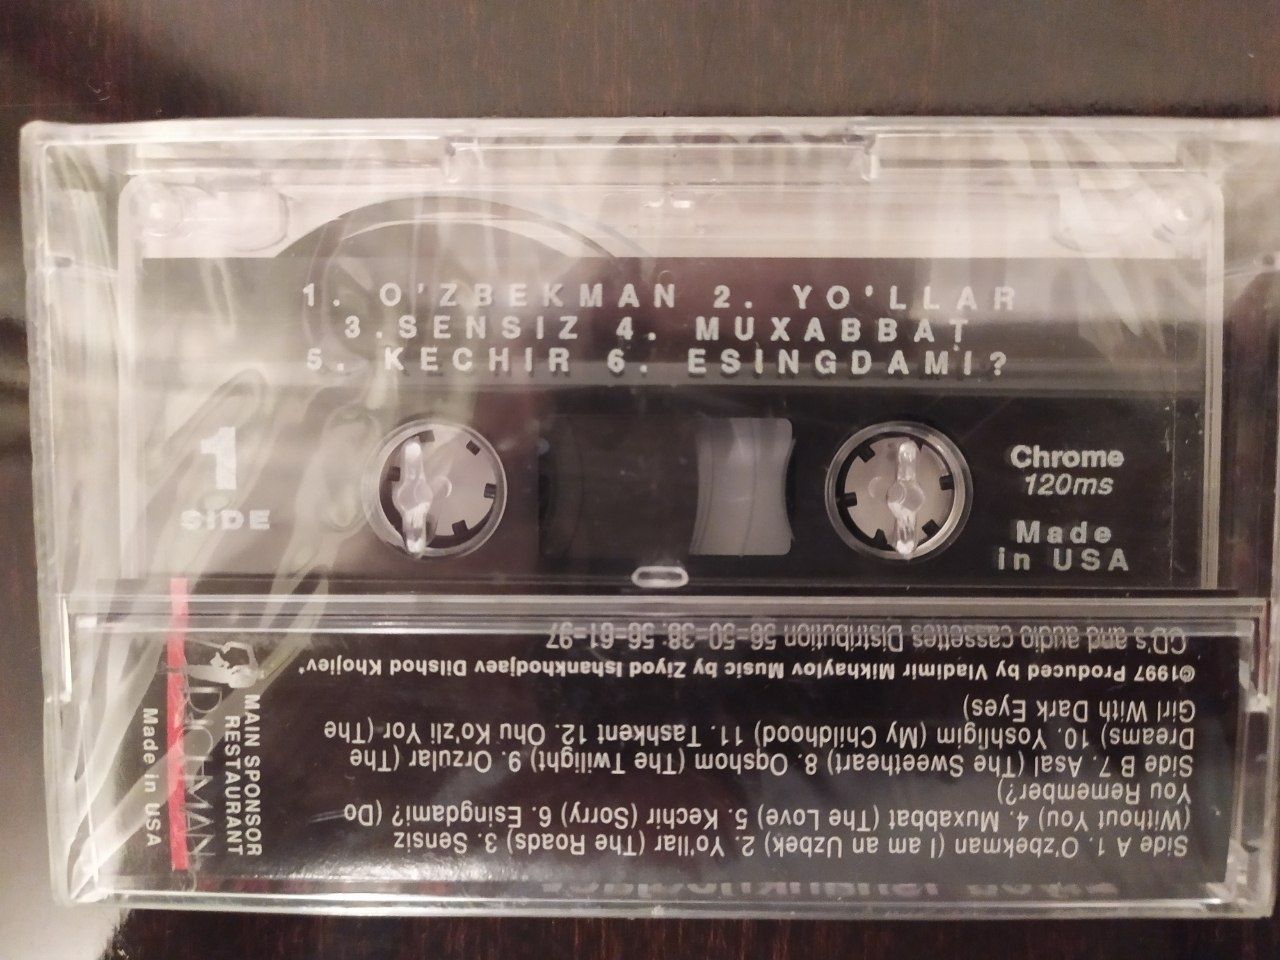 Аудио кассета Зиеда Ишанходжаева альбом "Орзулар".